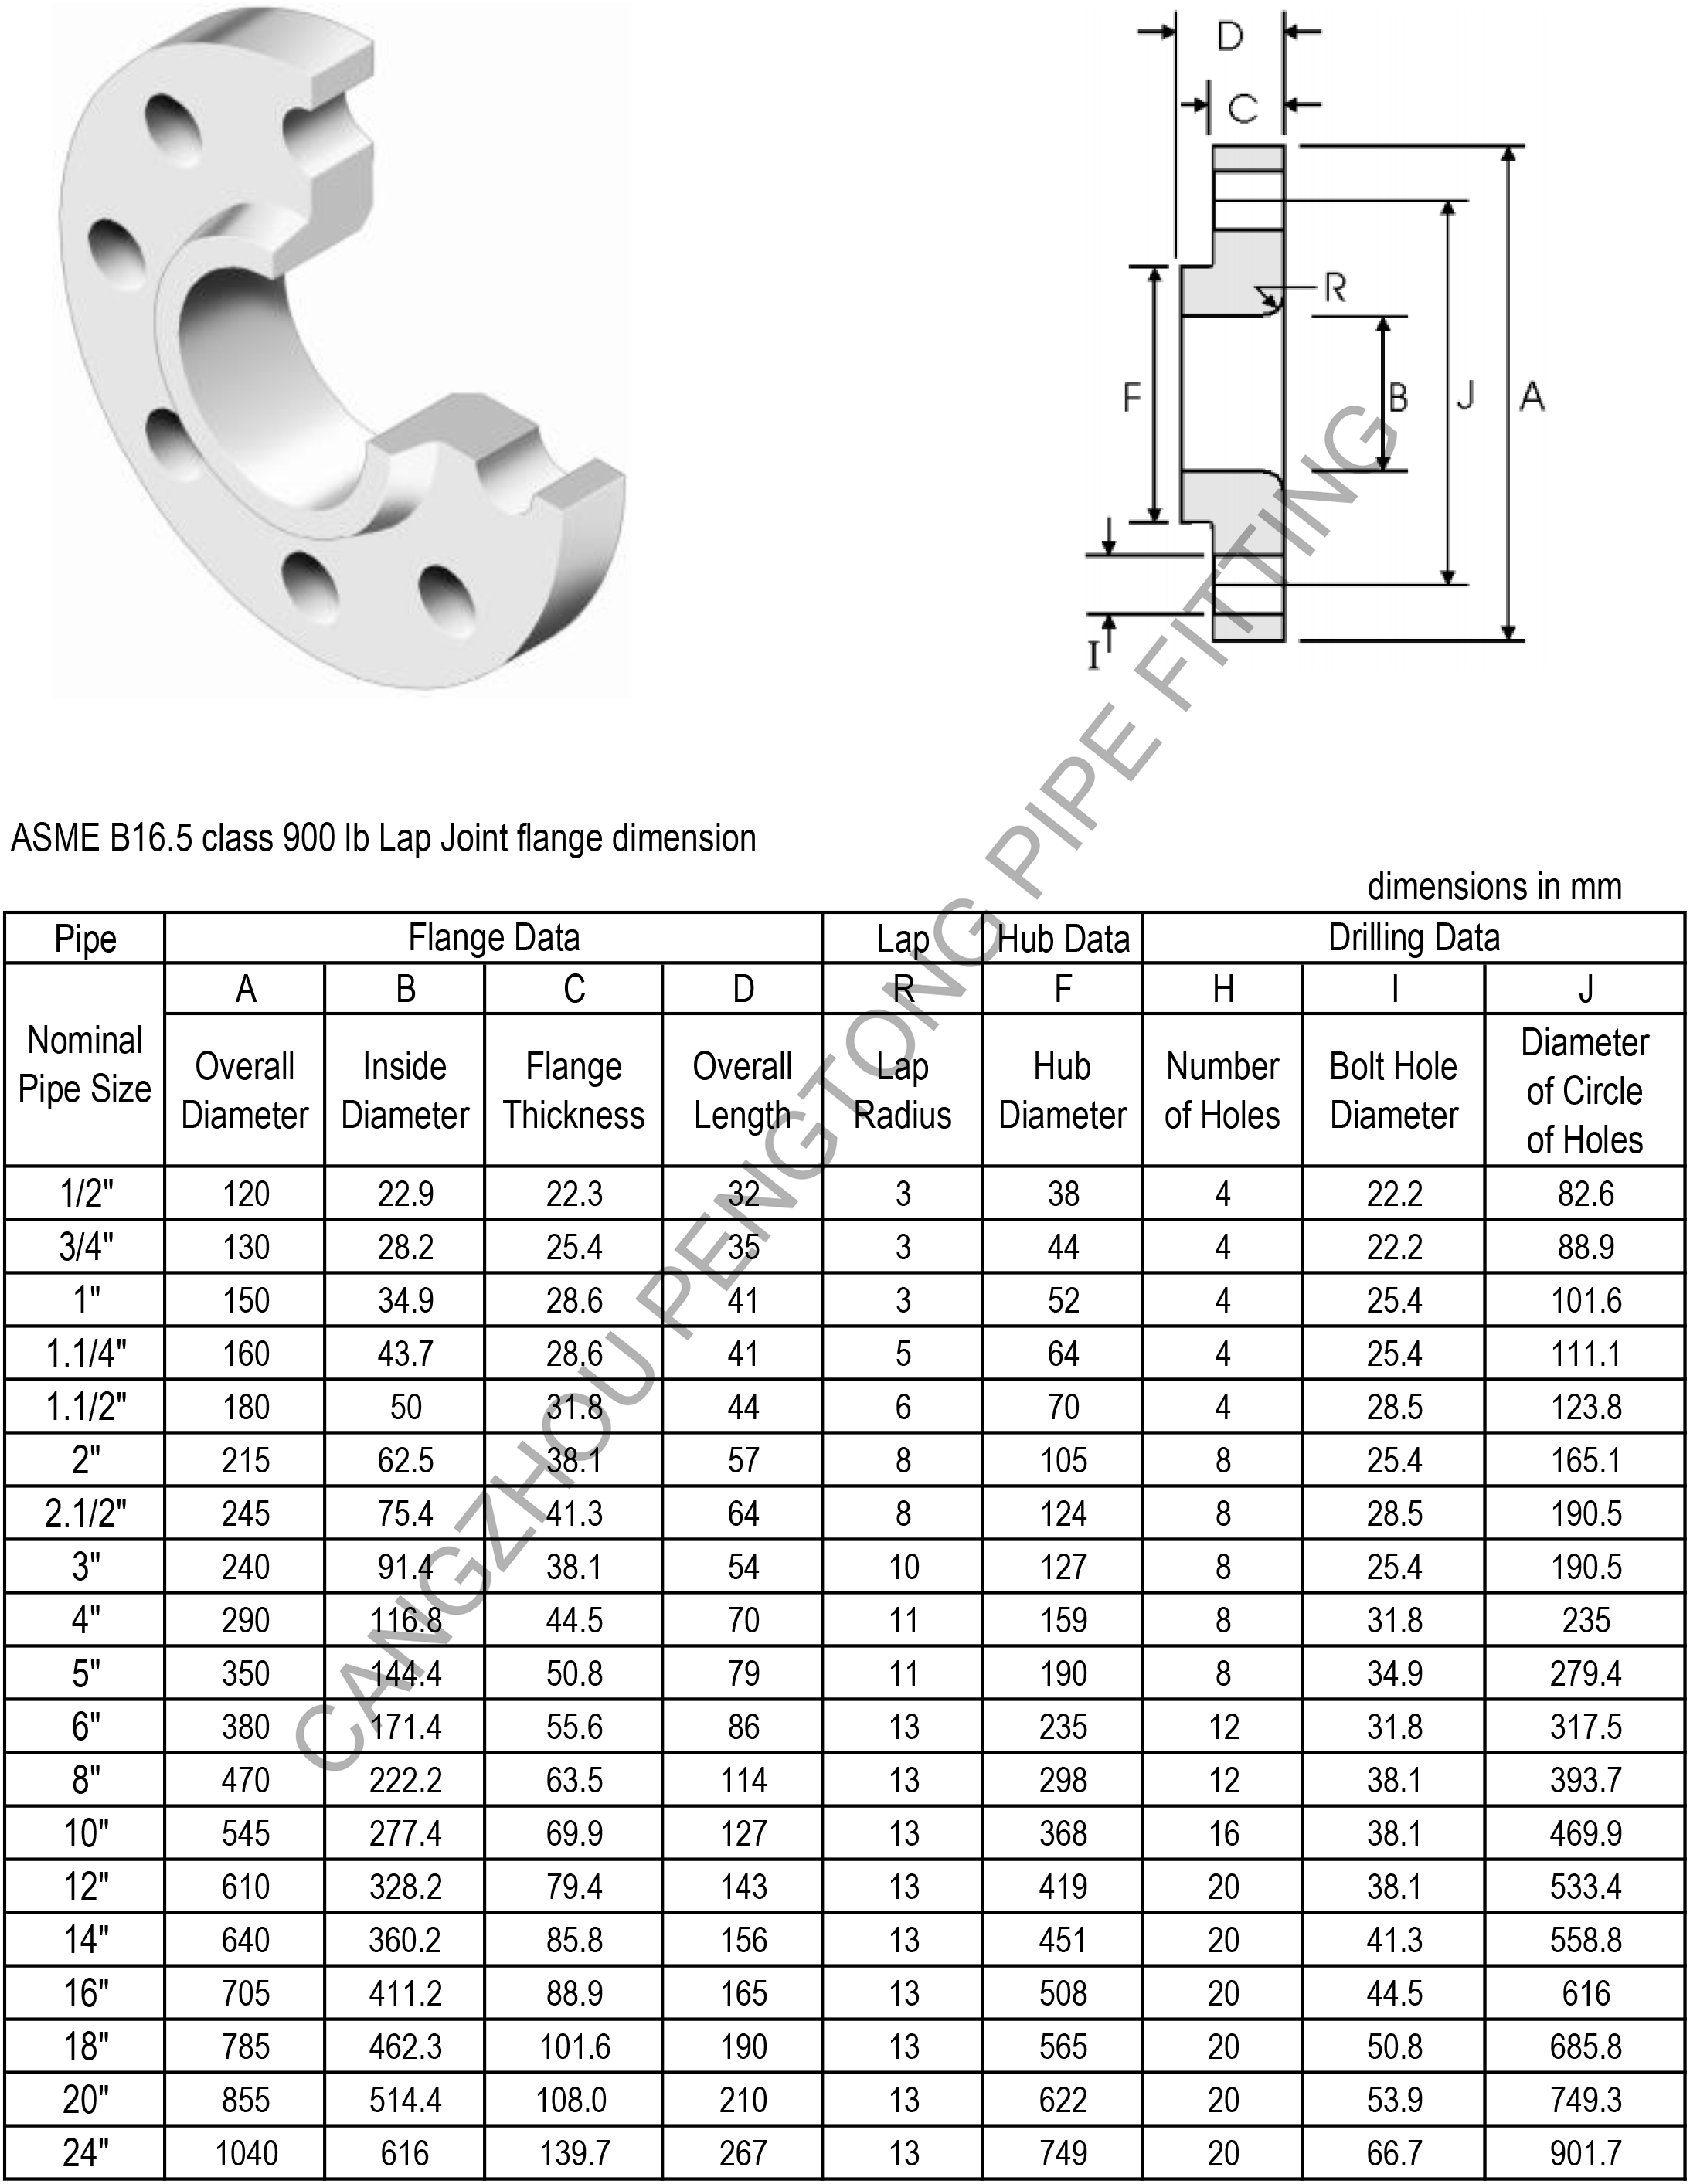 ASME B16.5 class 900 lb lap Joint flange dimension